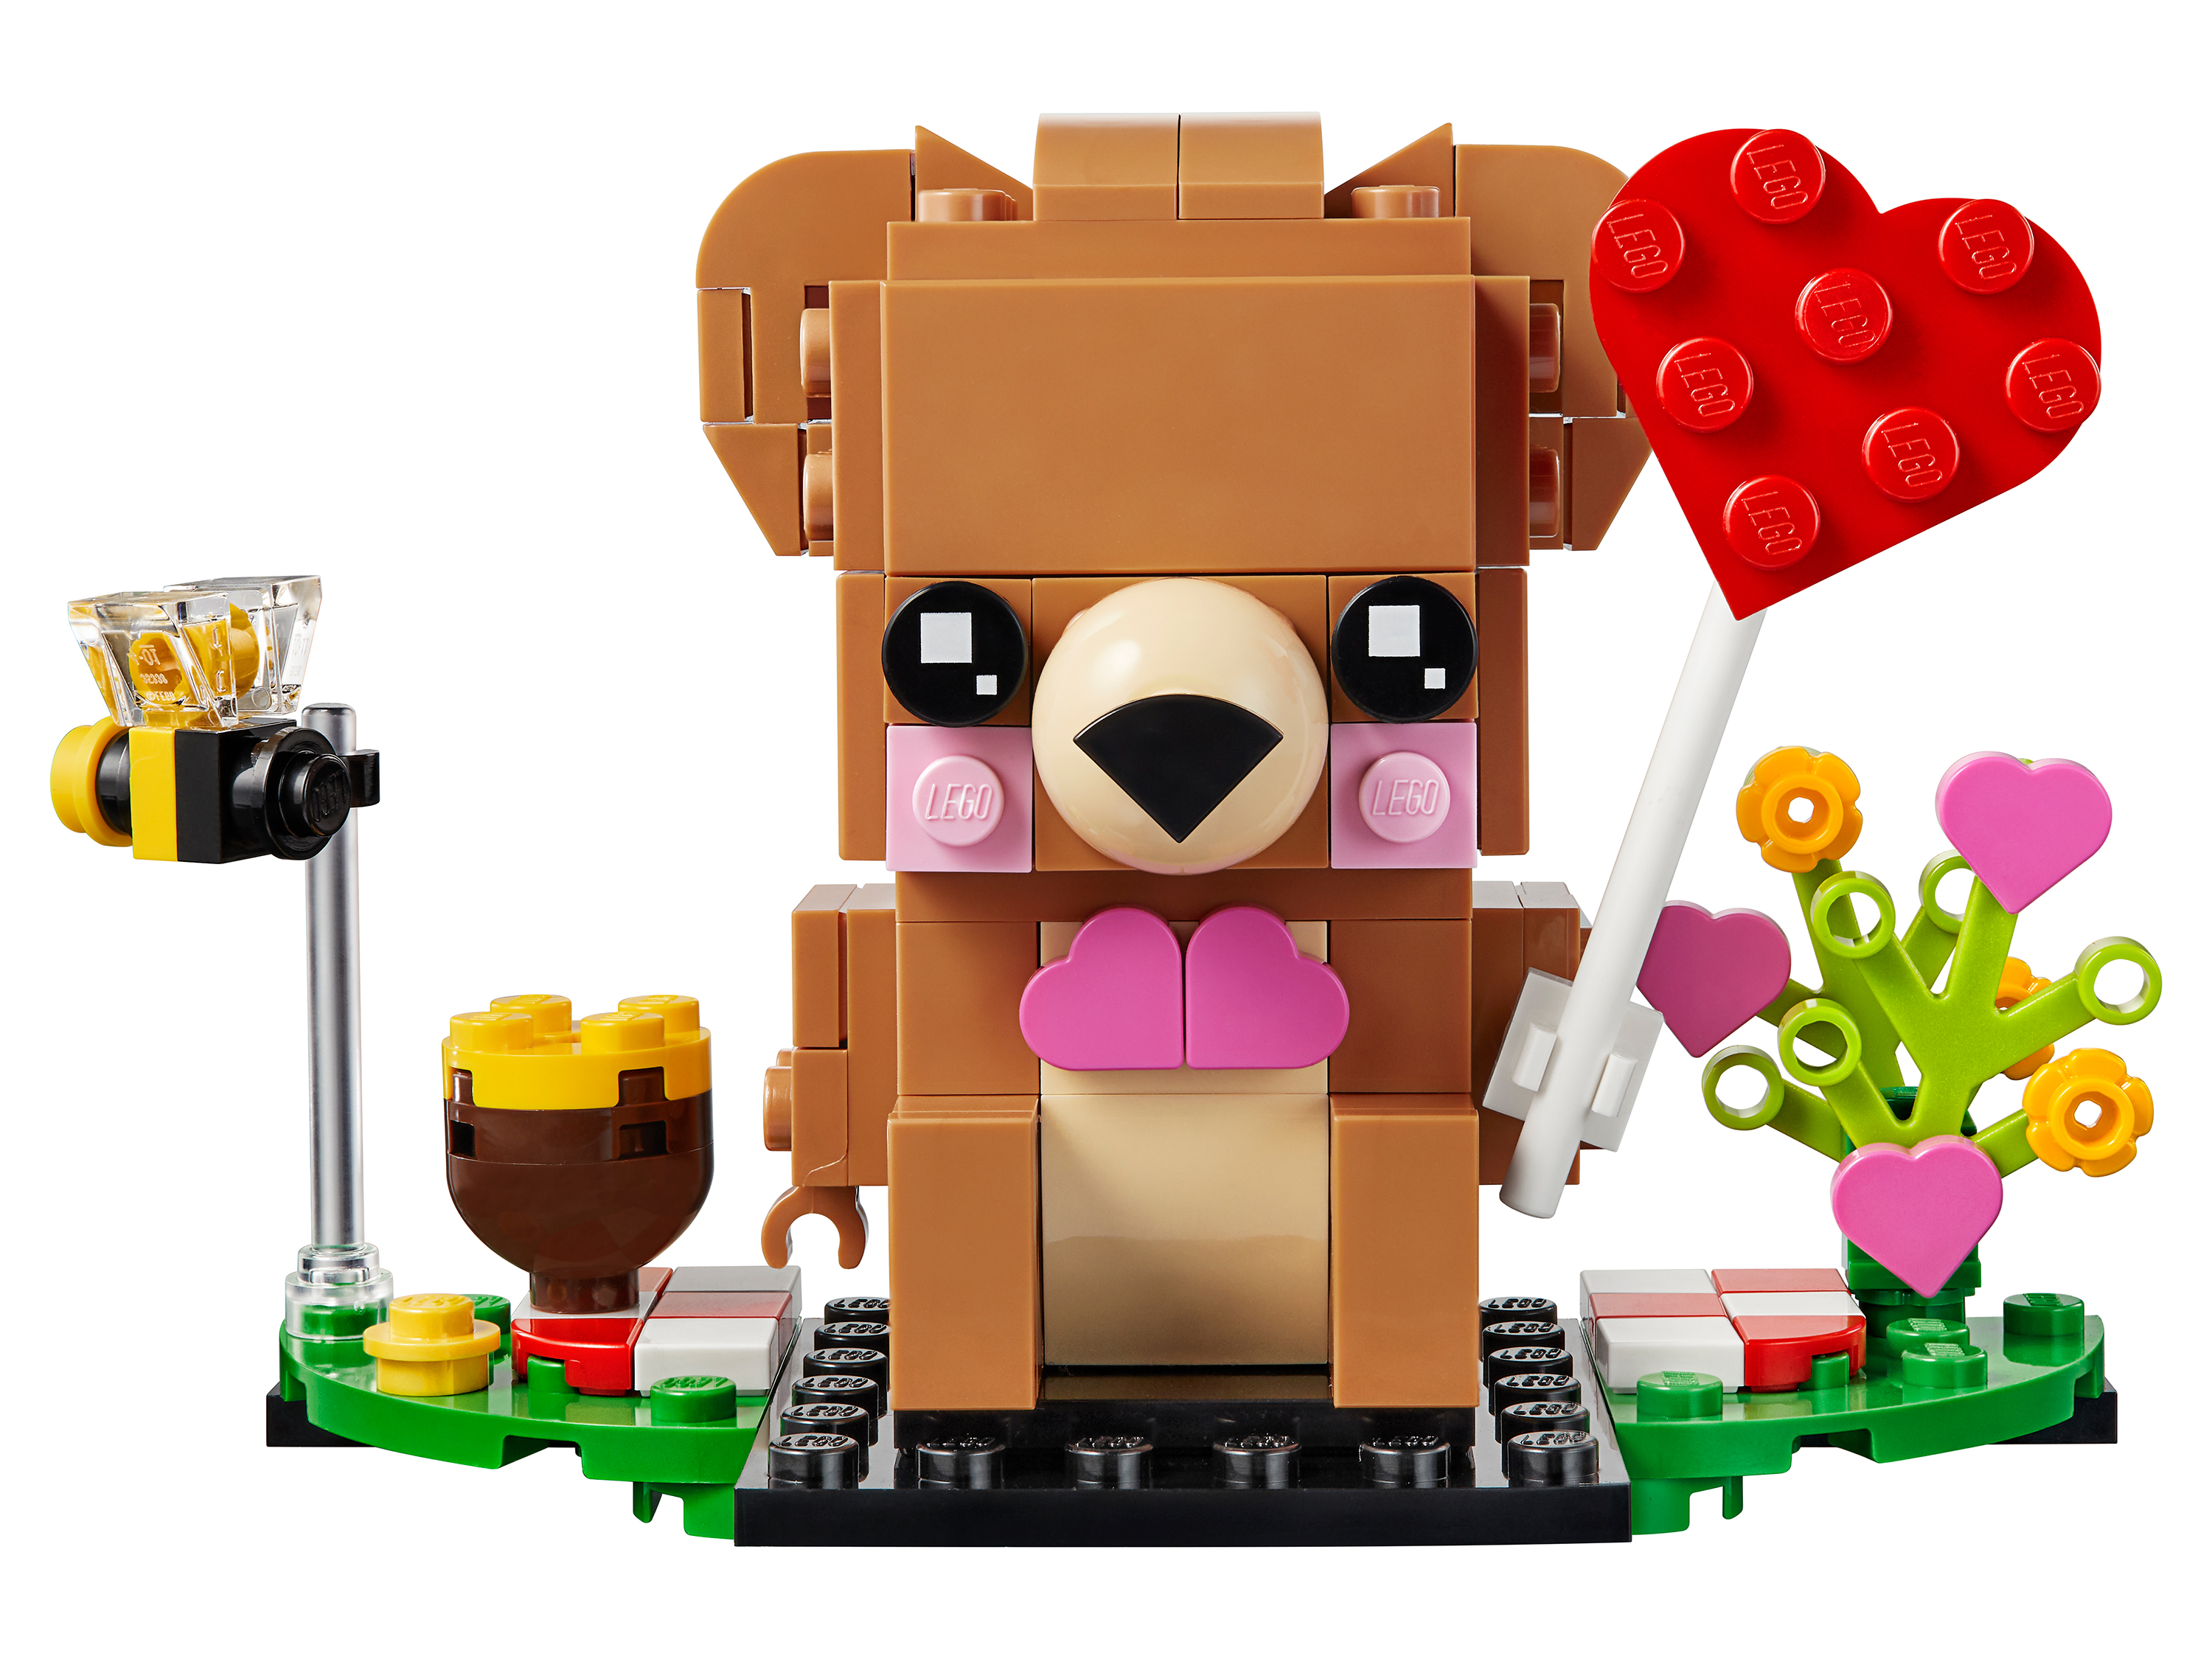 Конструктор LEGO BrickHeadz 40379 Мишка на День св. Валентина